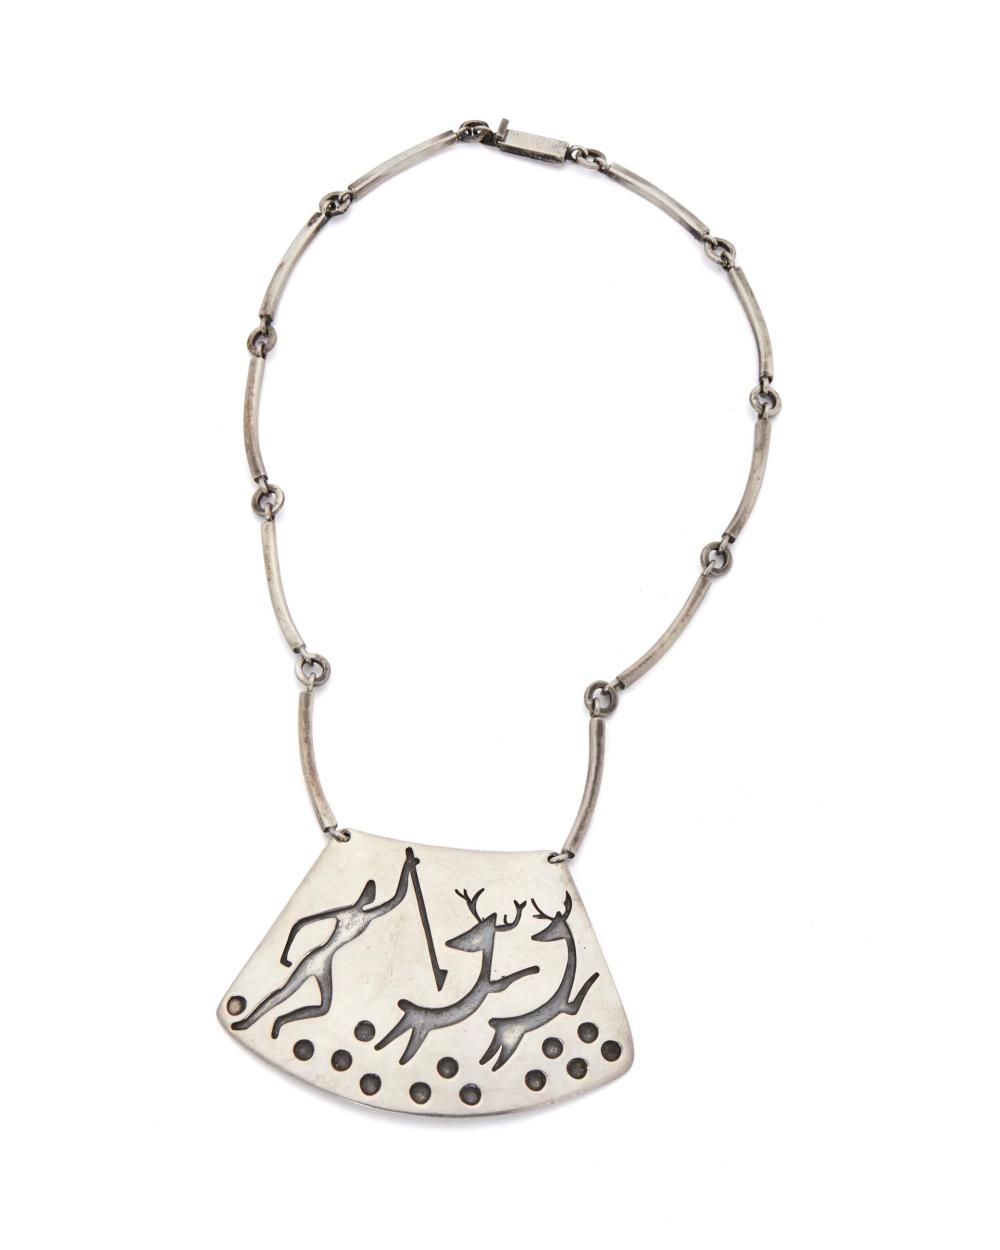 An Lascaux-motif sterling silver necklace